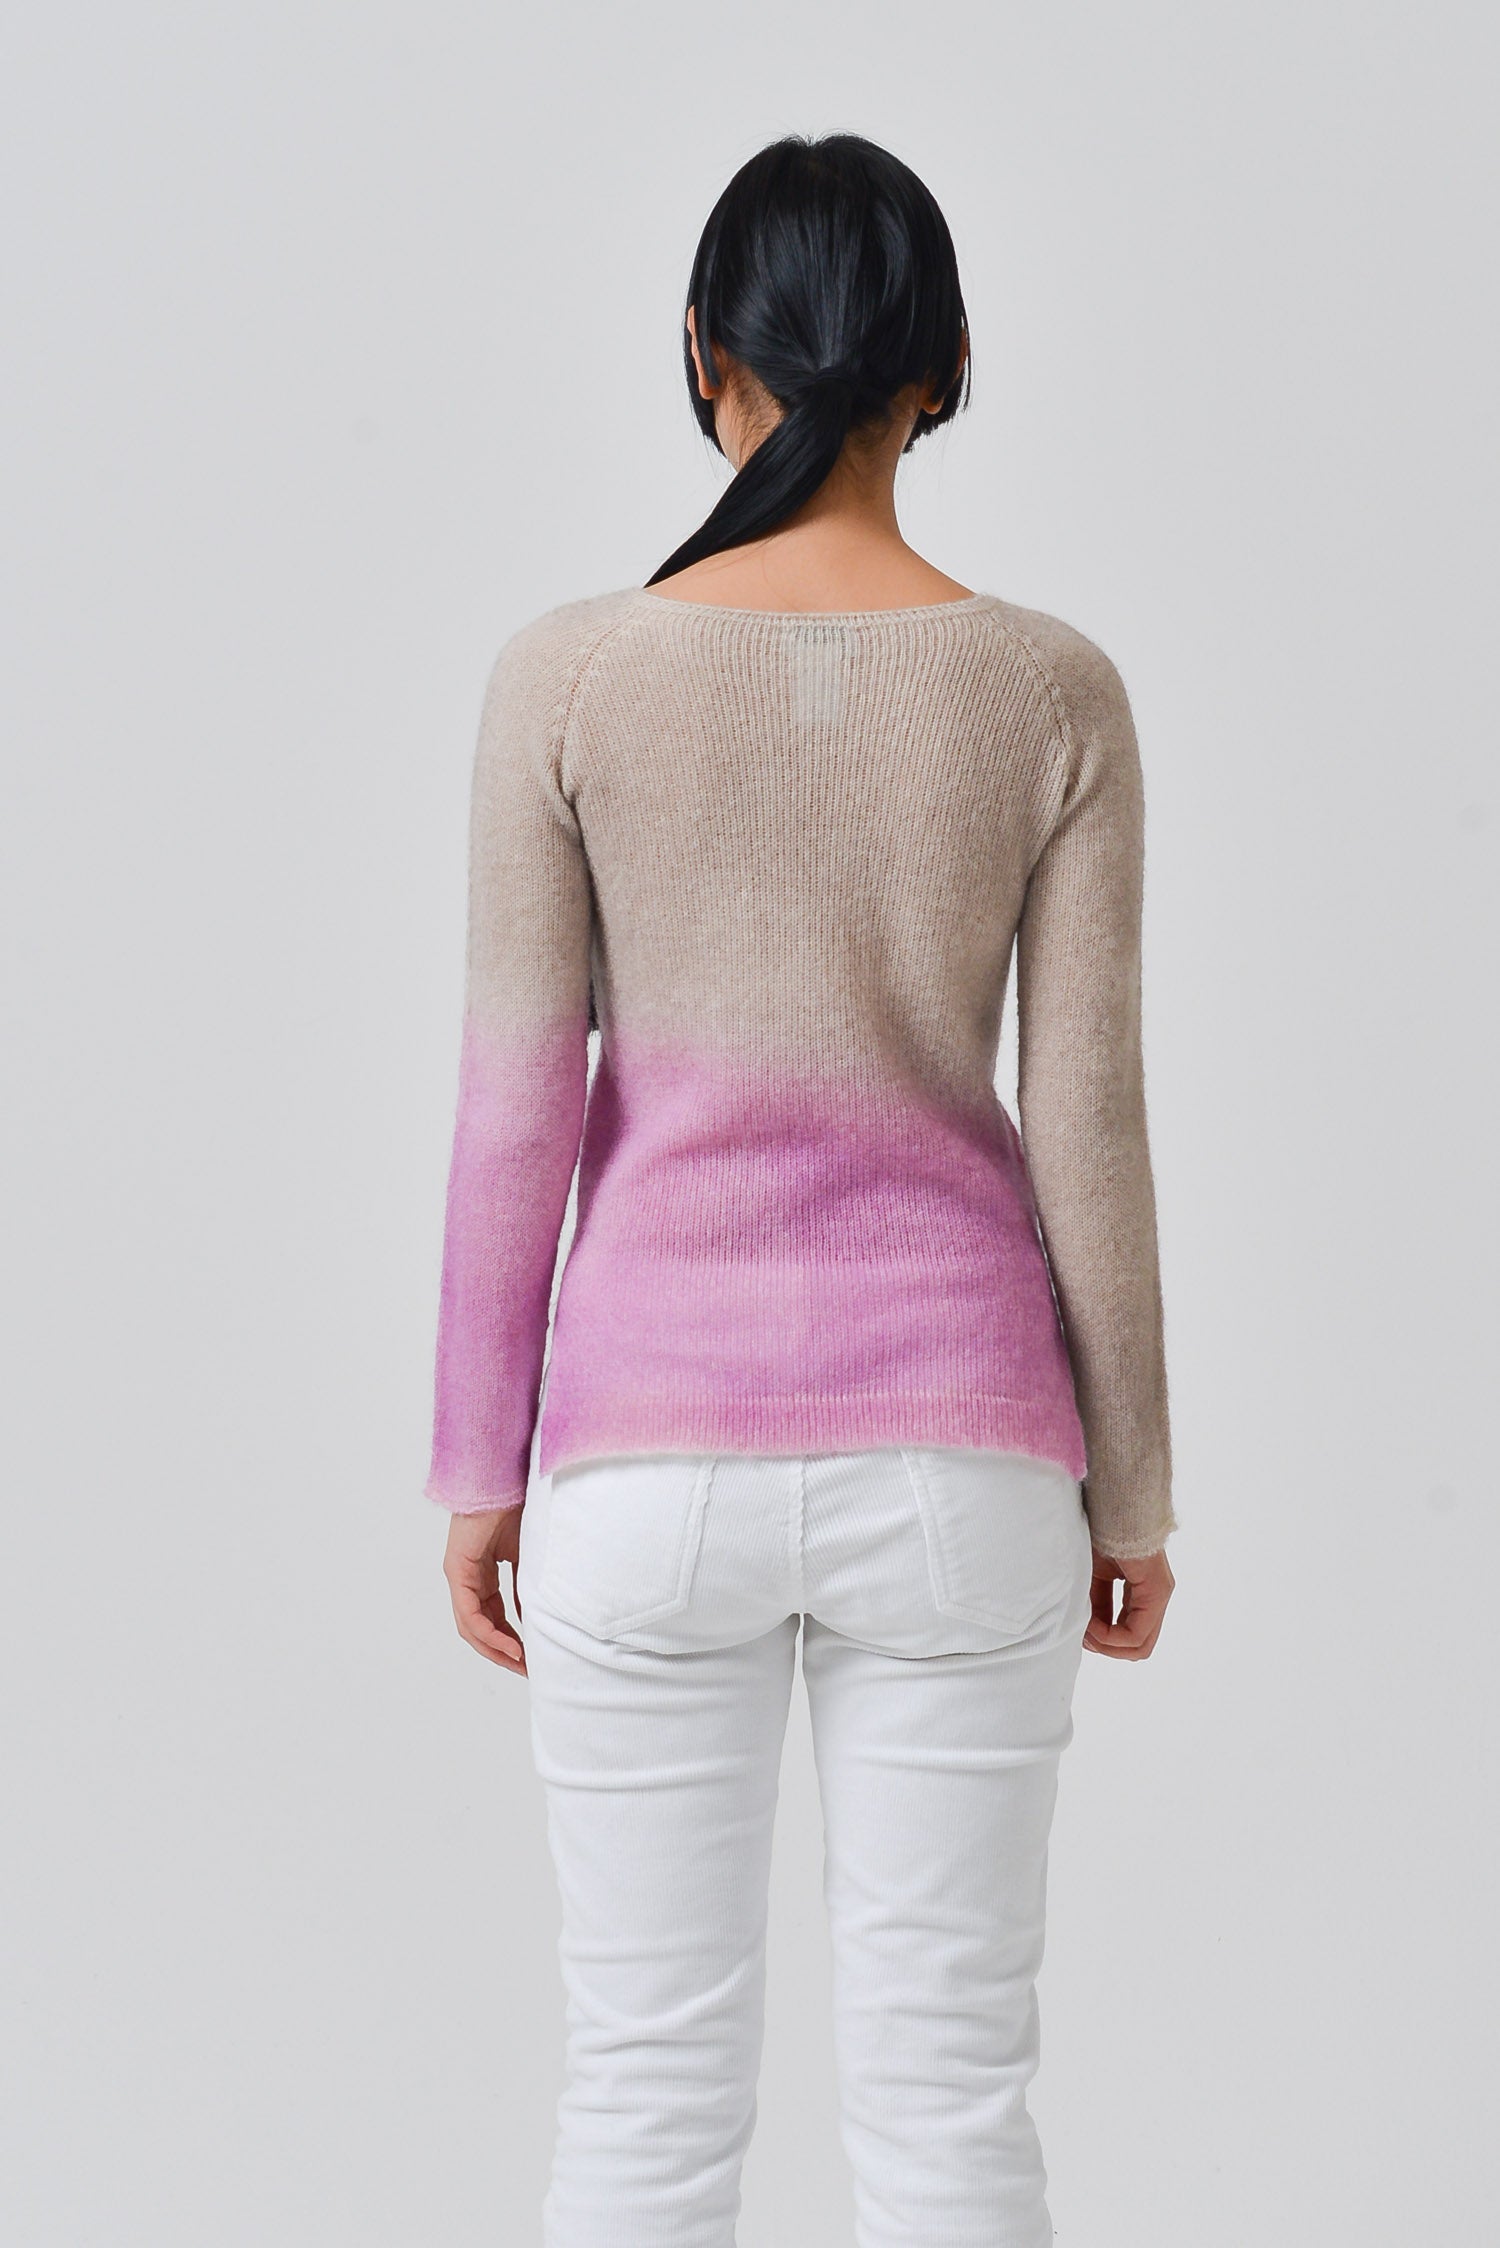 Cowie X-Spray Art Sweater - Auburn